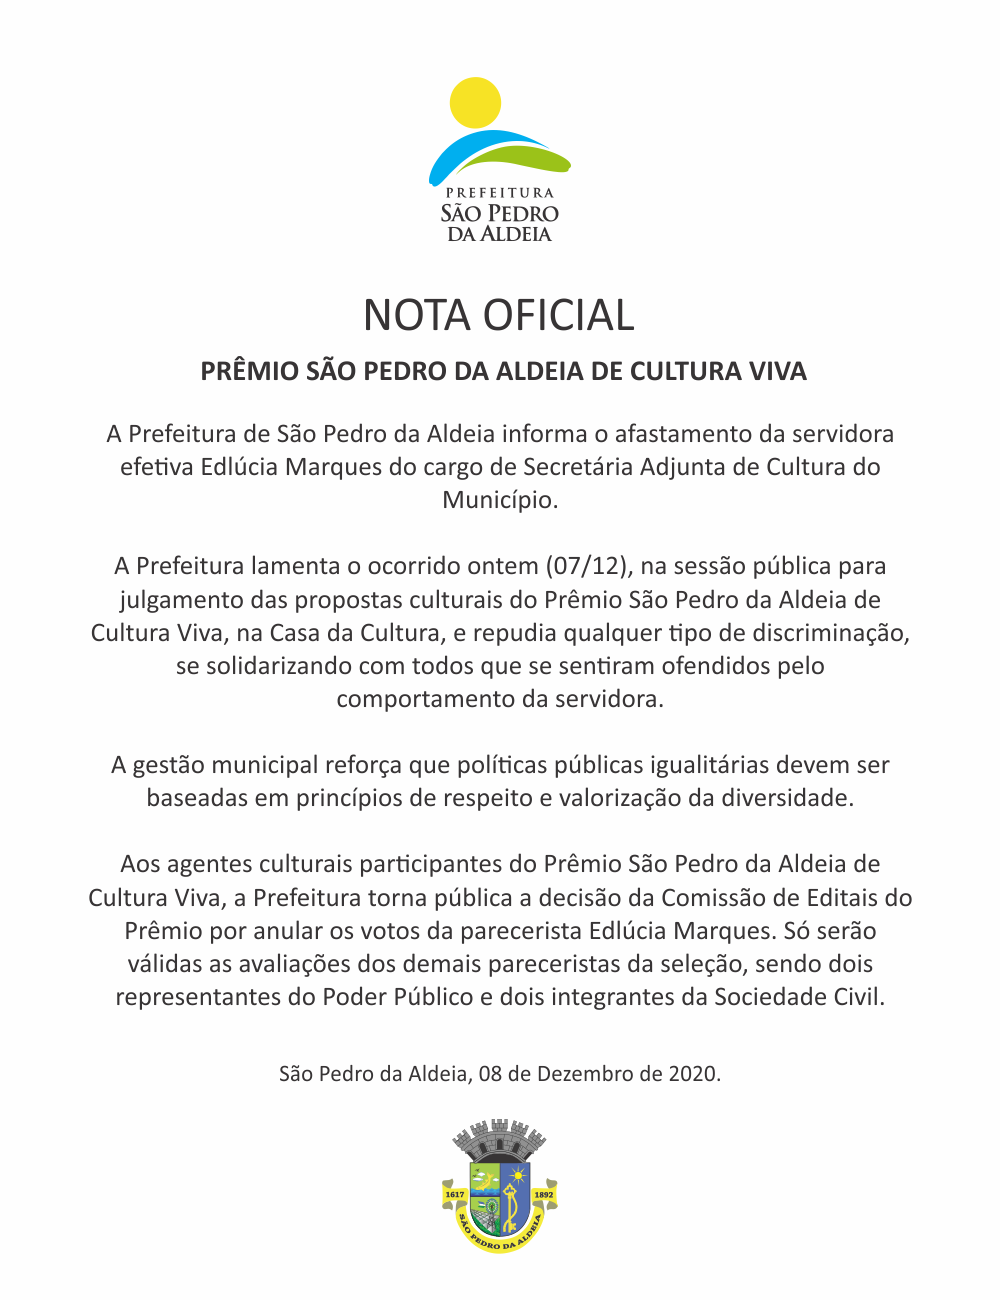 Secretária Adjunta de Cultura de São Pedro da Aldeia é afastada